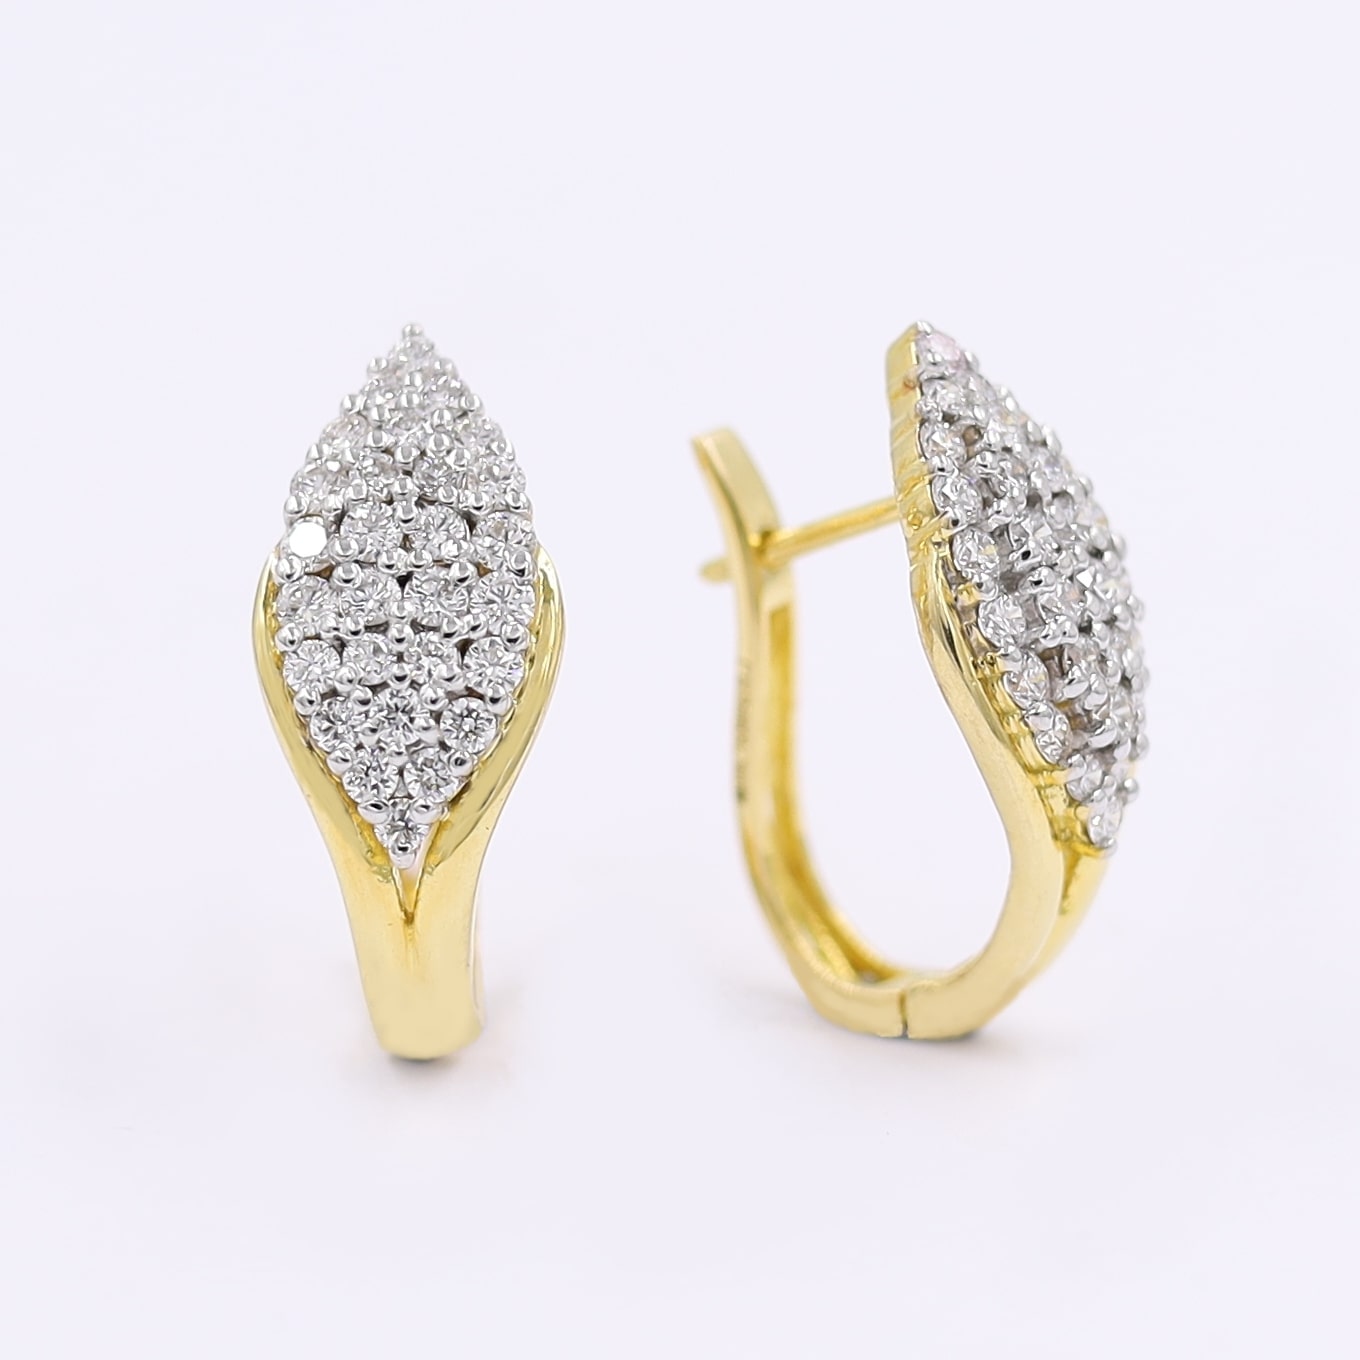 Dazzling Eternity Diamond Bali (hoop) Earrings